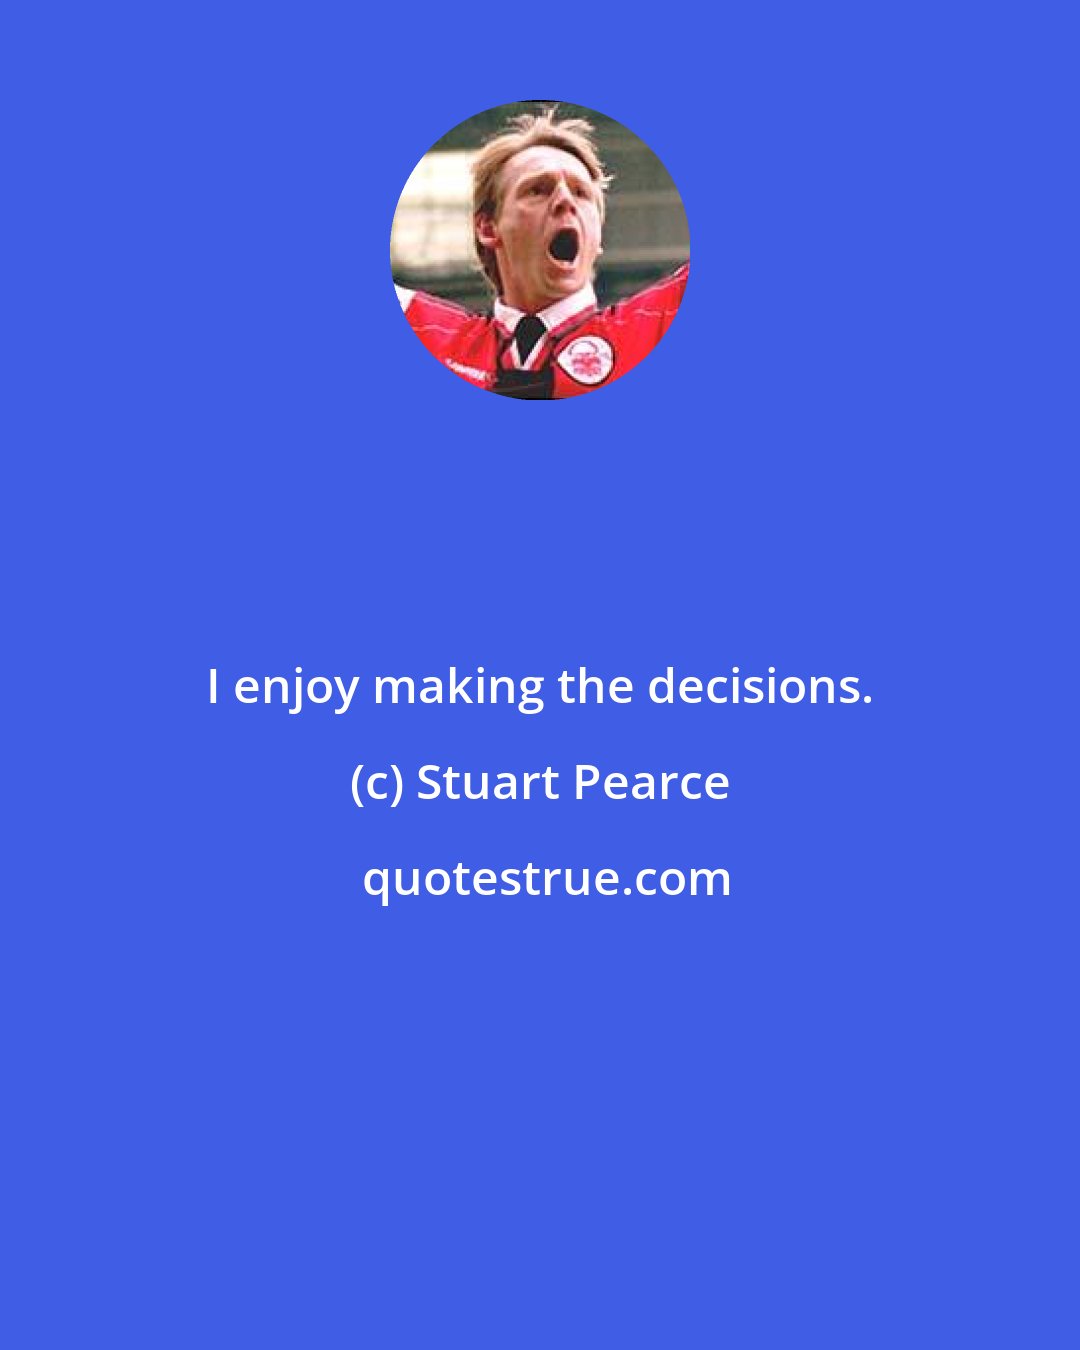 Stuart Pearce: I enjoy making the decisions.